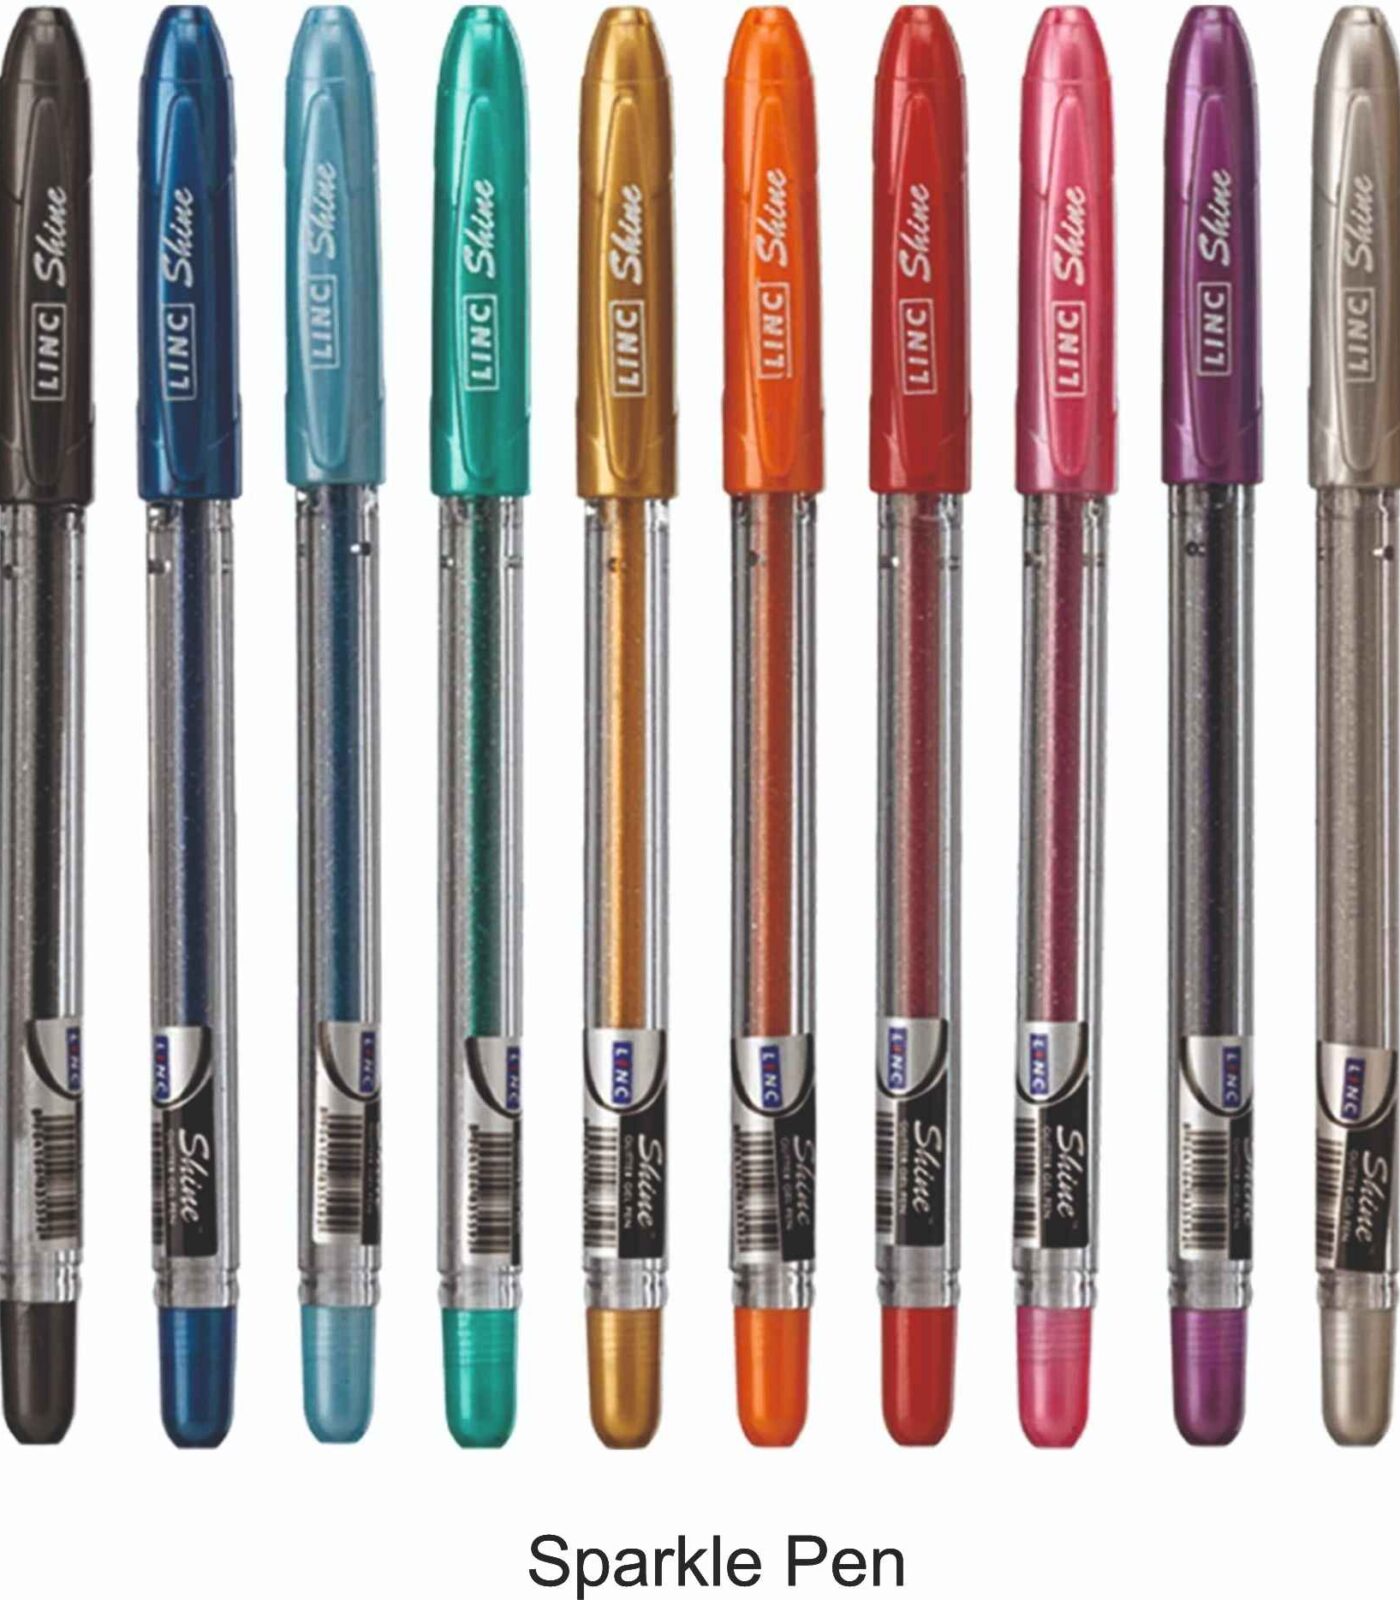 Sparkle Pens